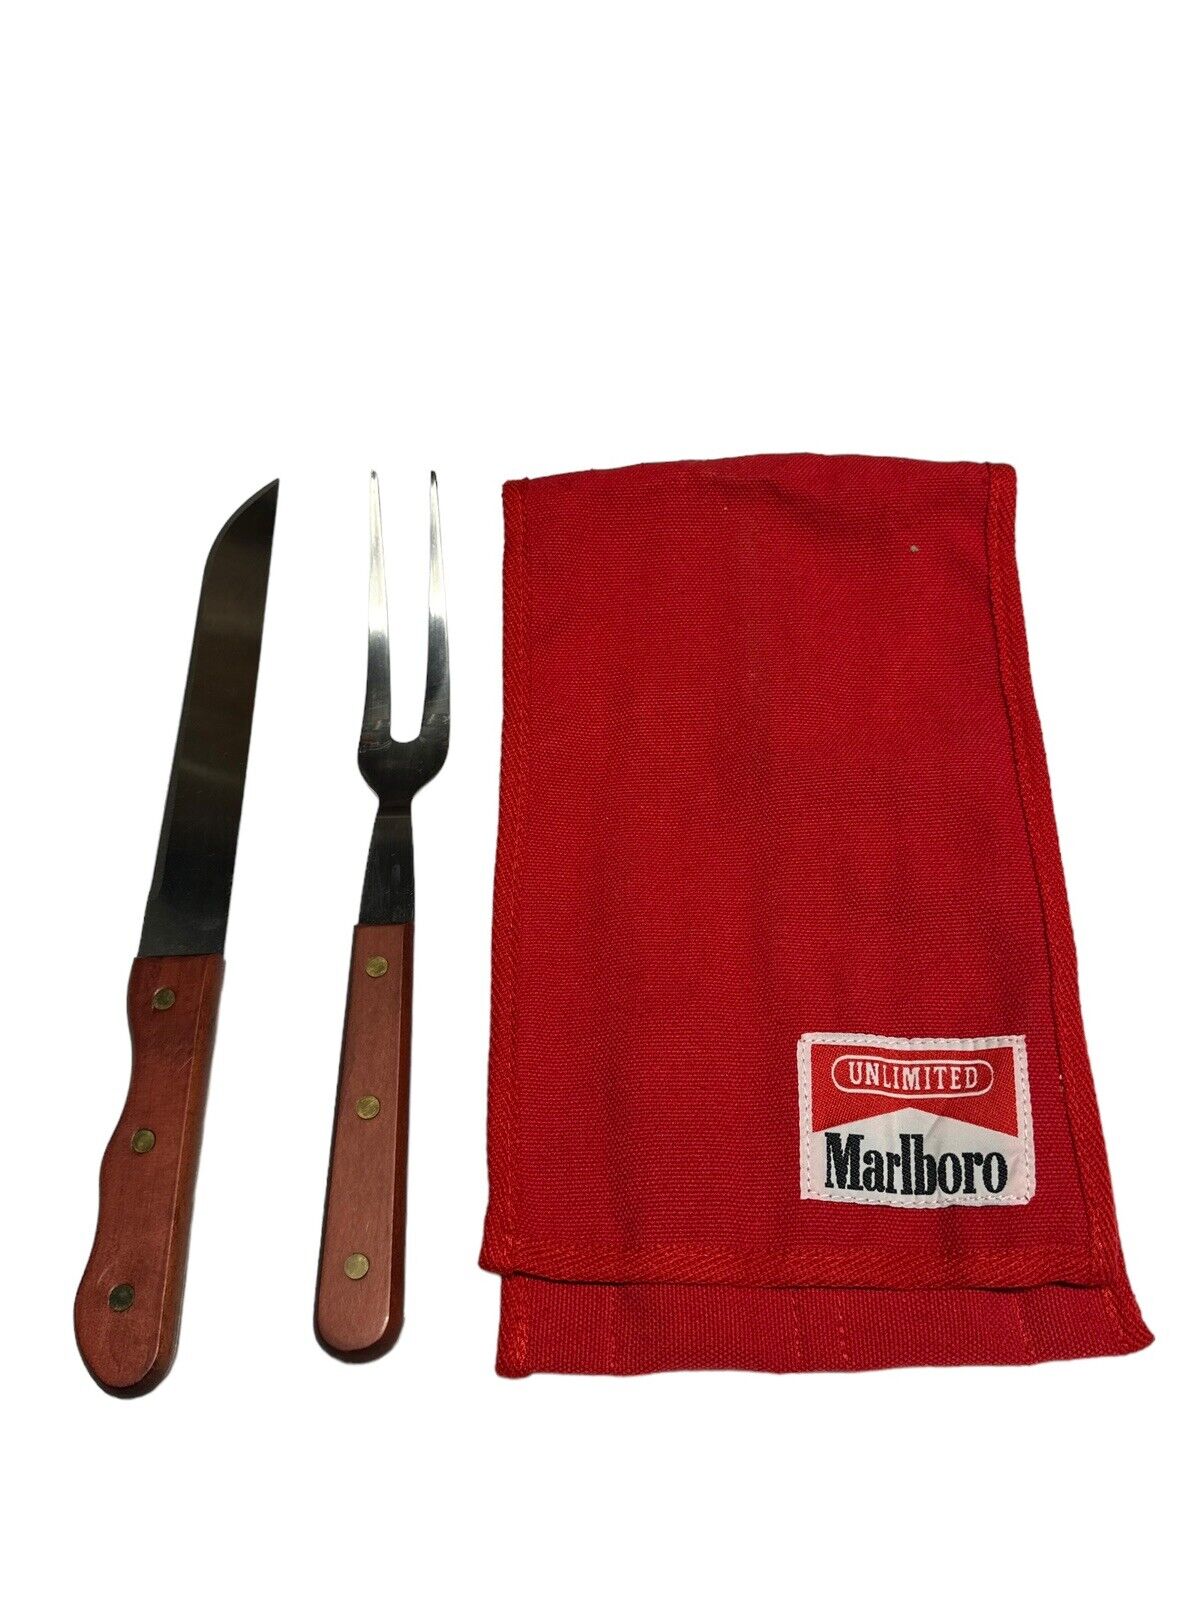 Vintage 1980s RED Marlboro Unlimited BBQ Grilling FORK/KNIFE Set